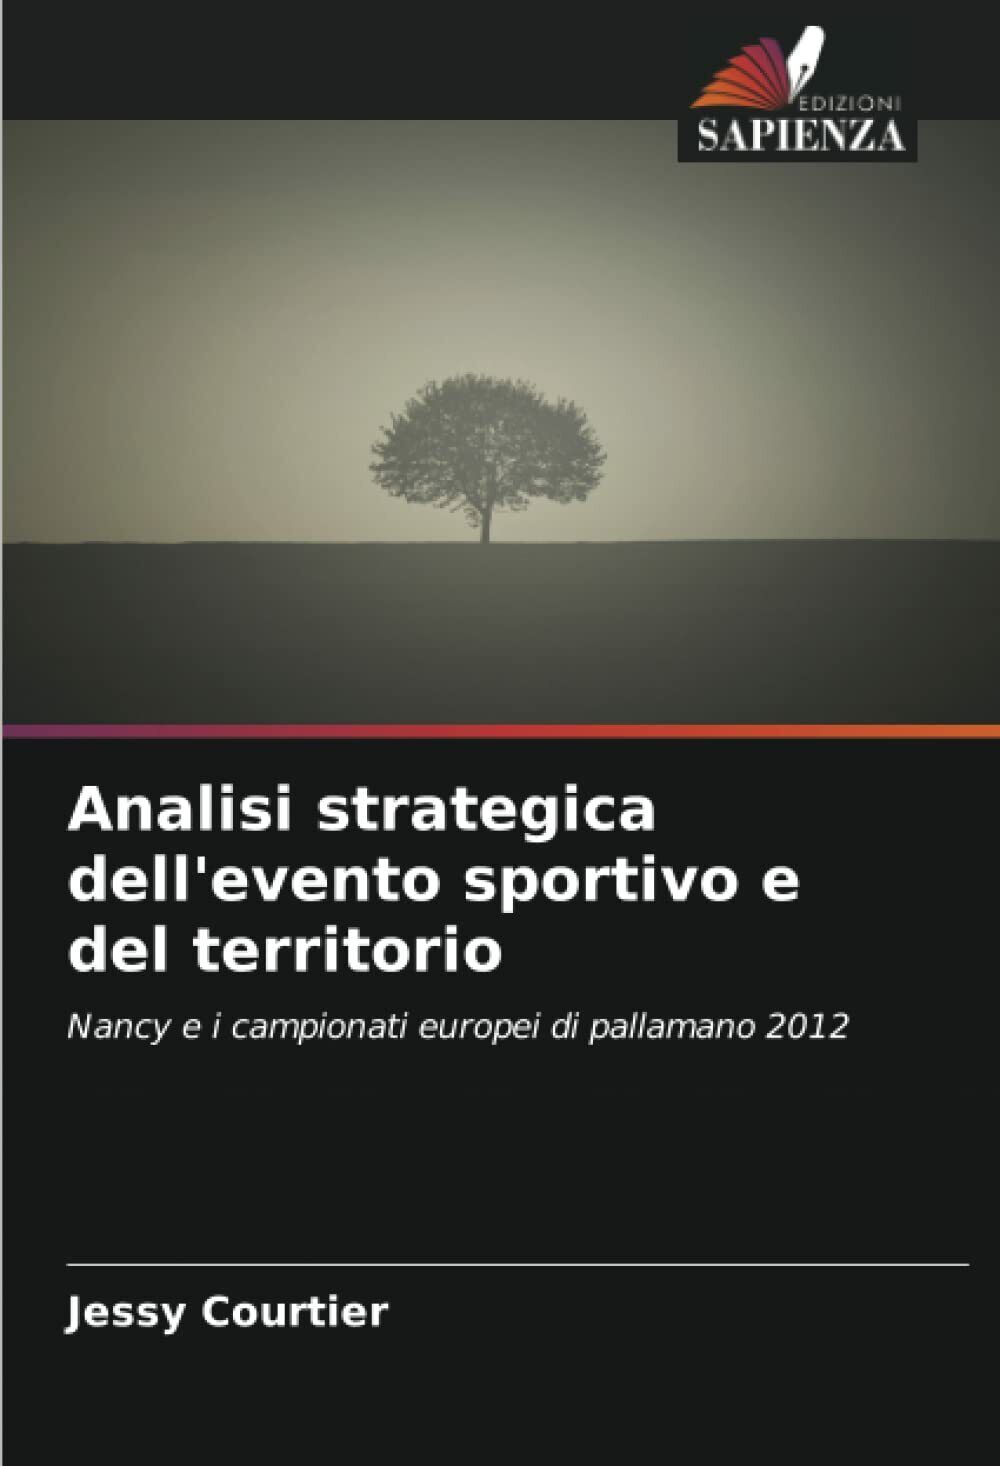 Analisi strategica dell'evento sportivo e del territorio - Jessy Courtier - 2012